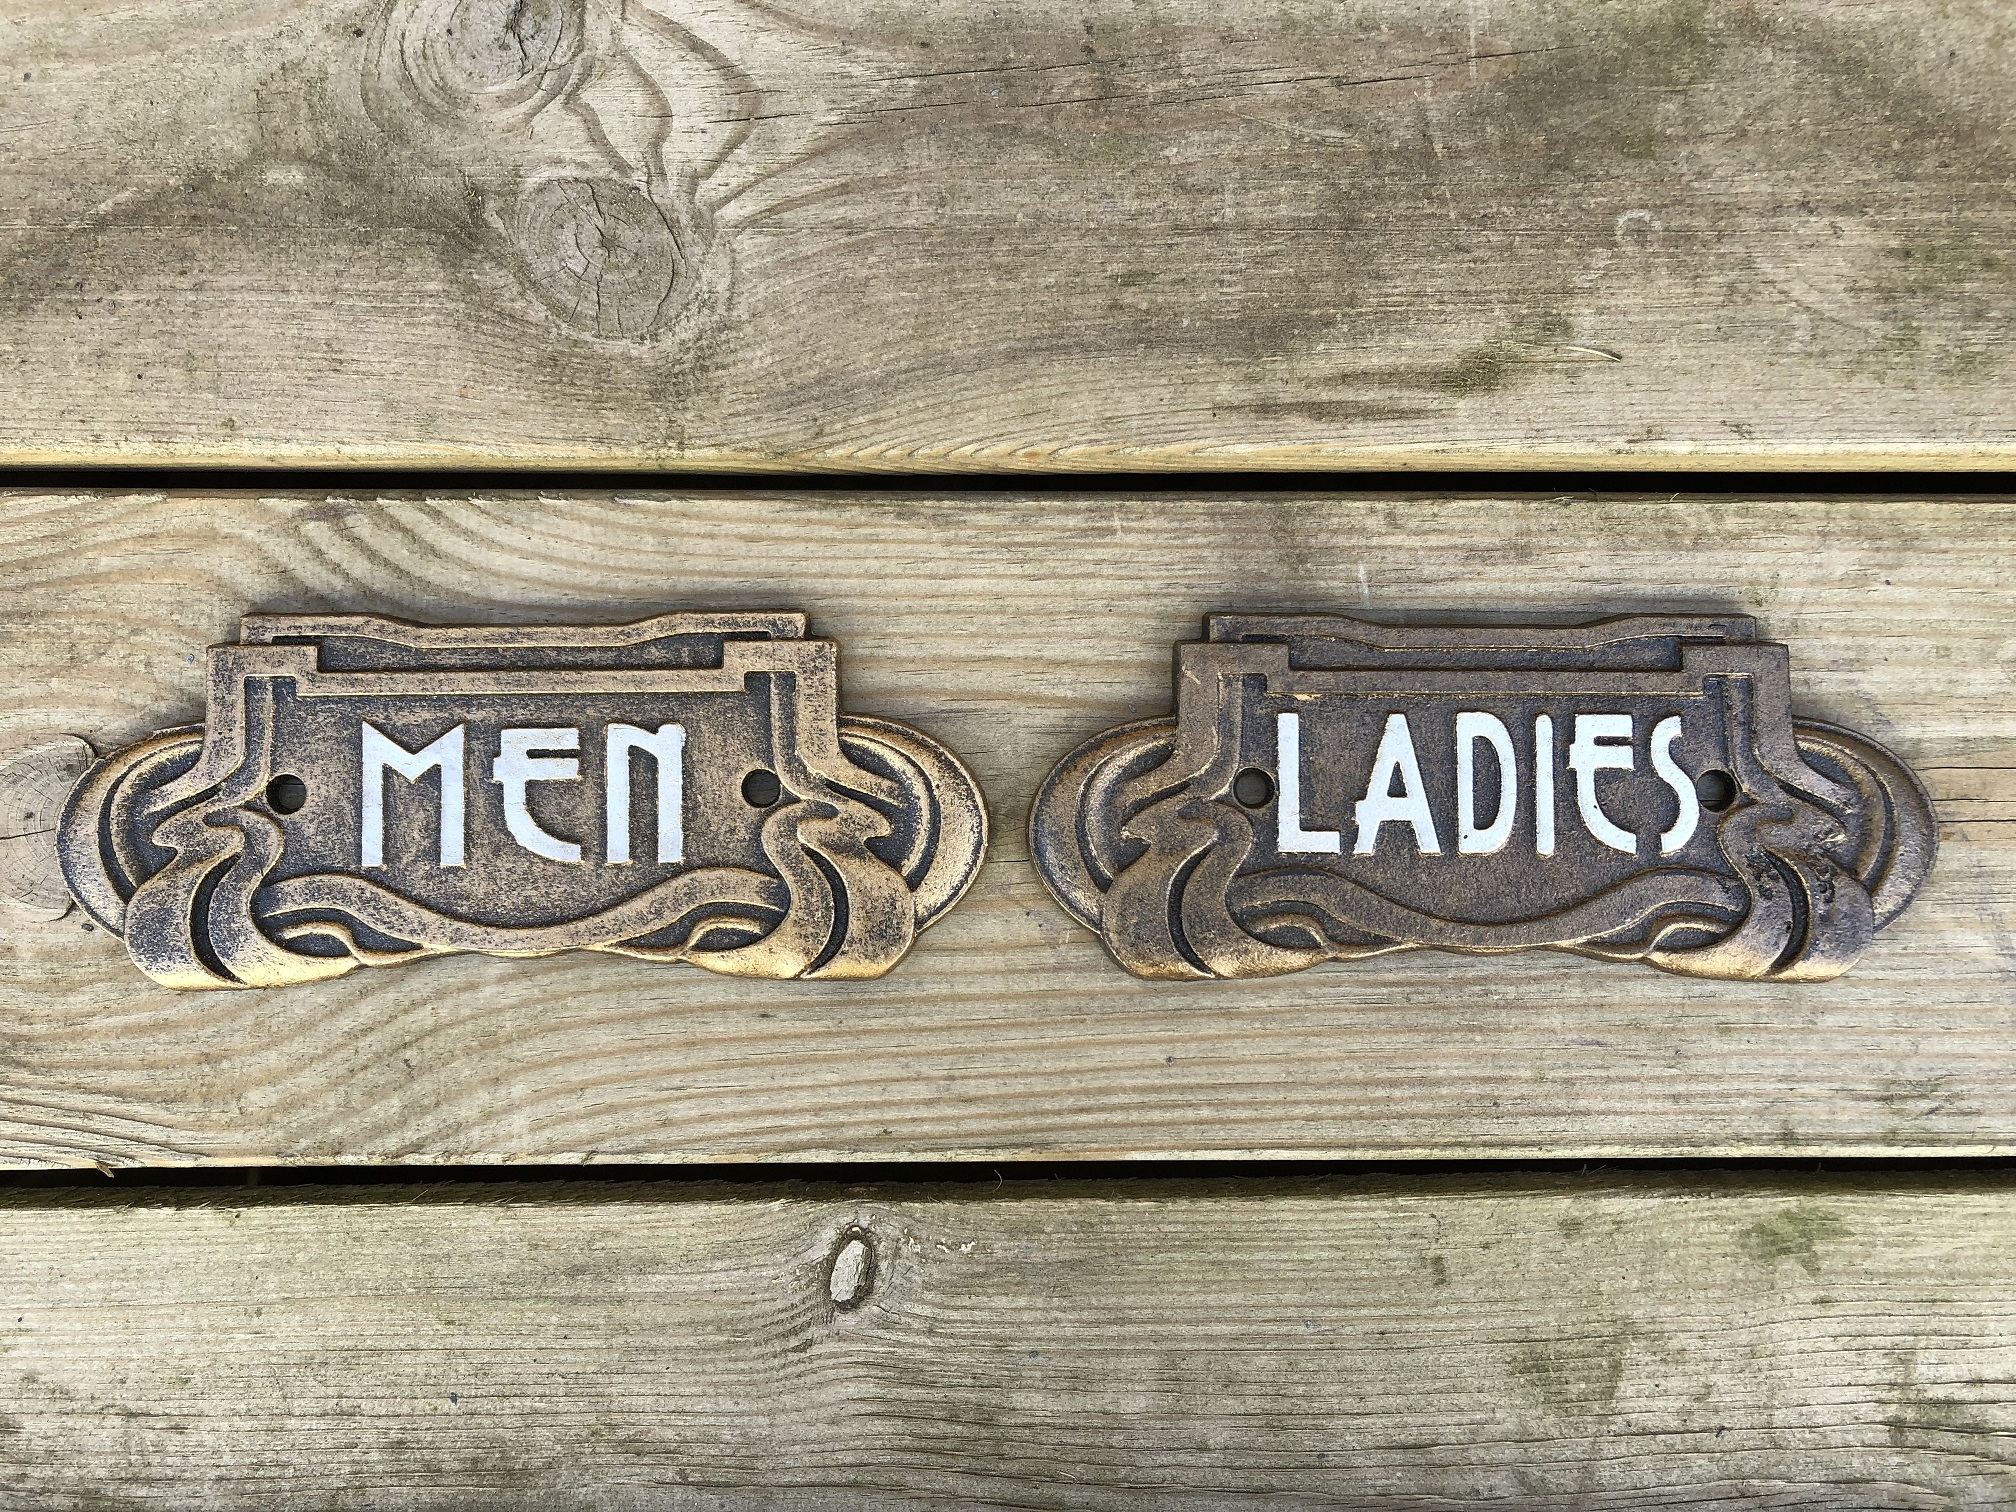 Satz Schilder für die Toilettentür, Gusseisen lackiert, Mann + Frau, schön und schwer